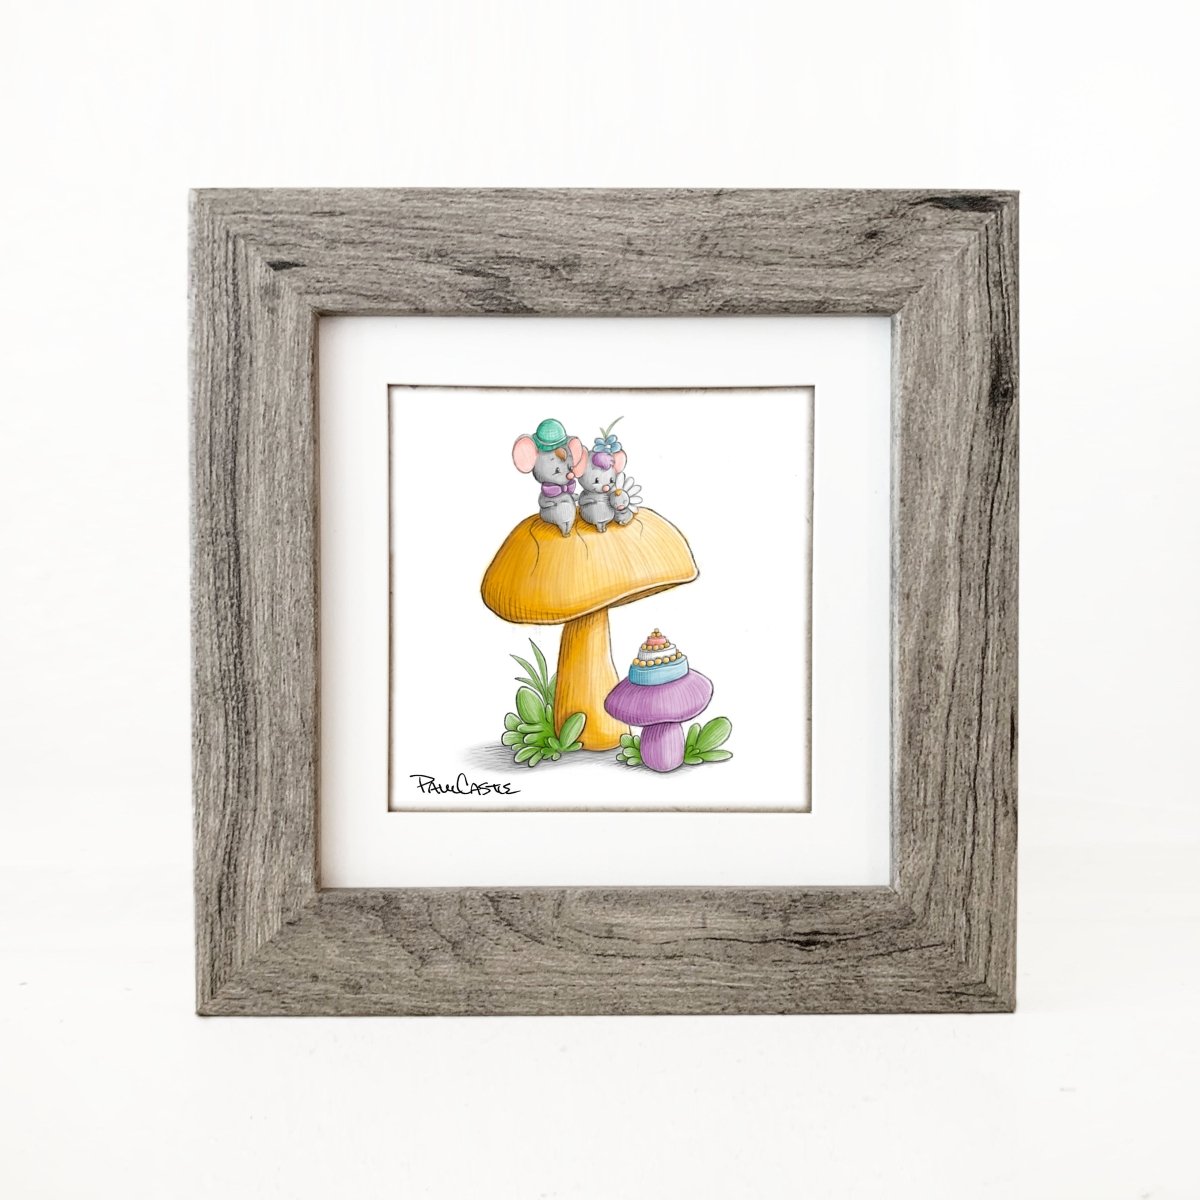 mice-sitting-on-mushroom-toadstool-illustration-grey-frame